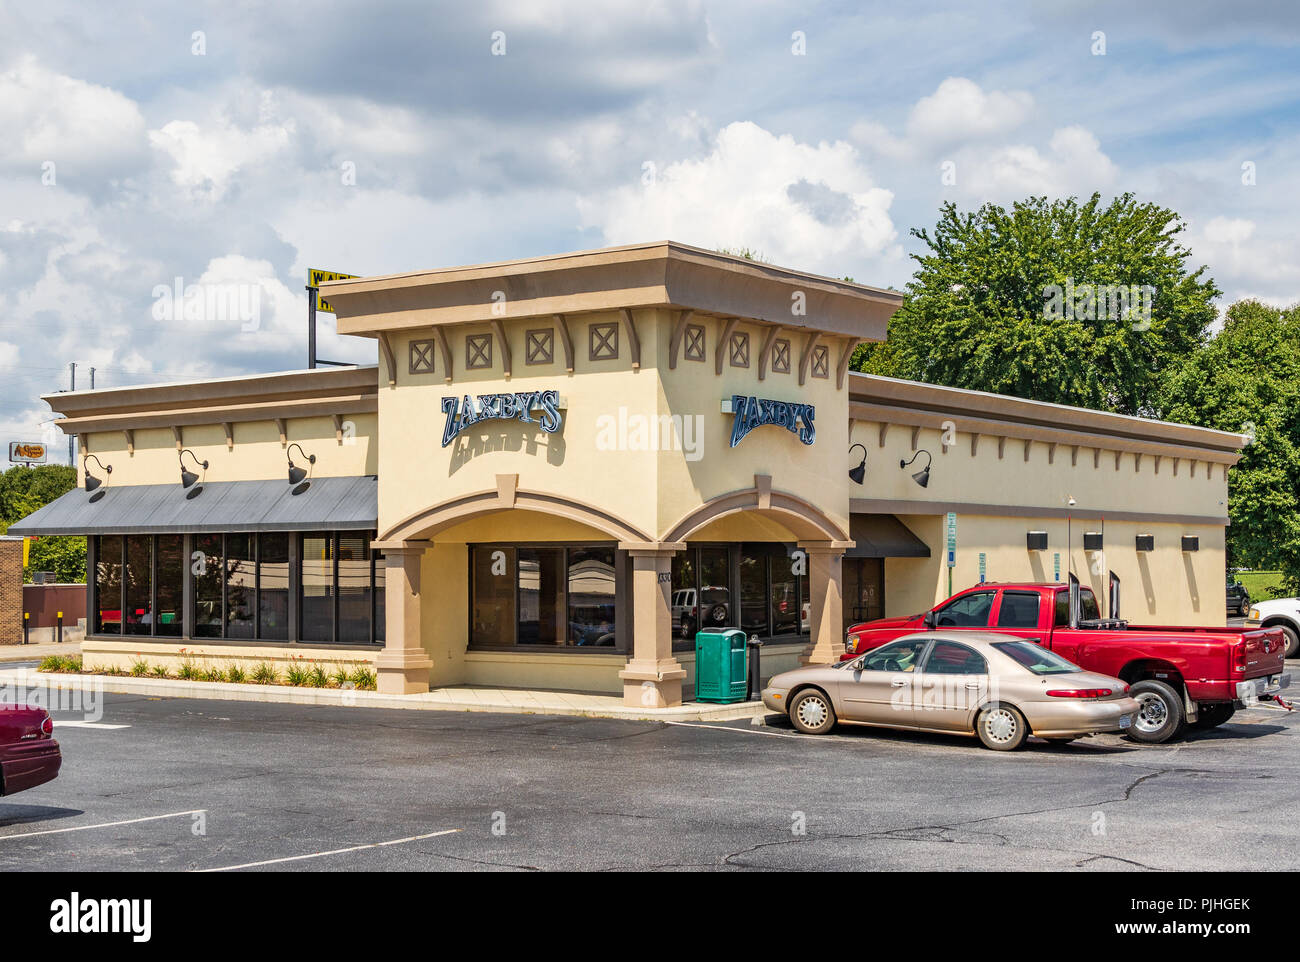 HICKORY, NC, Stati Uniti d'America-9/6/18: Un Zaxby locali del ristorante dell'albergo, un fast food specializzato in dita di pollo, panini e insalate. Foto Stock